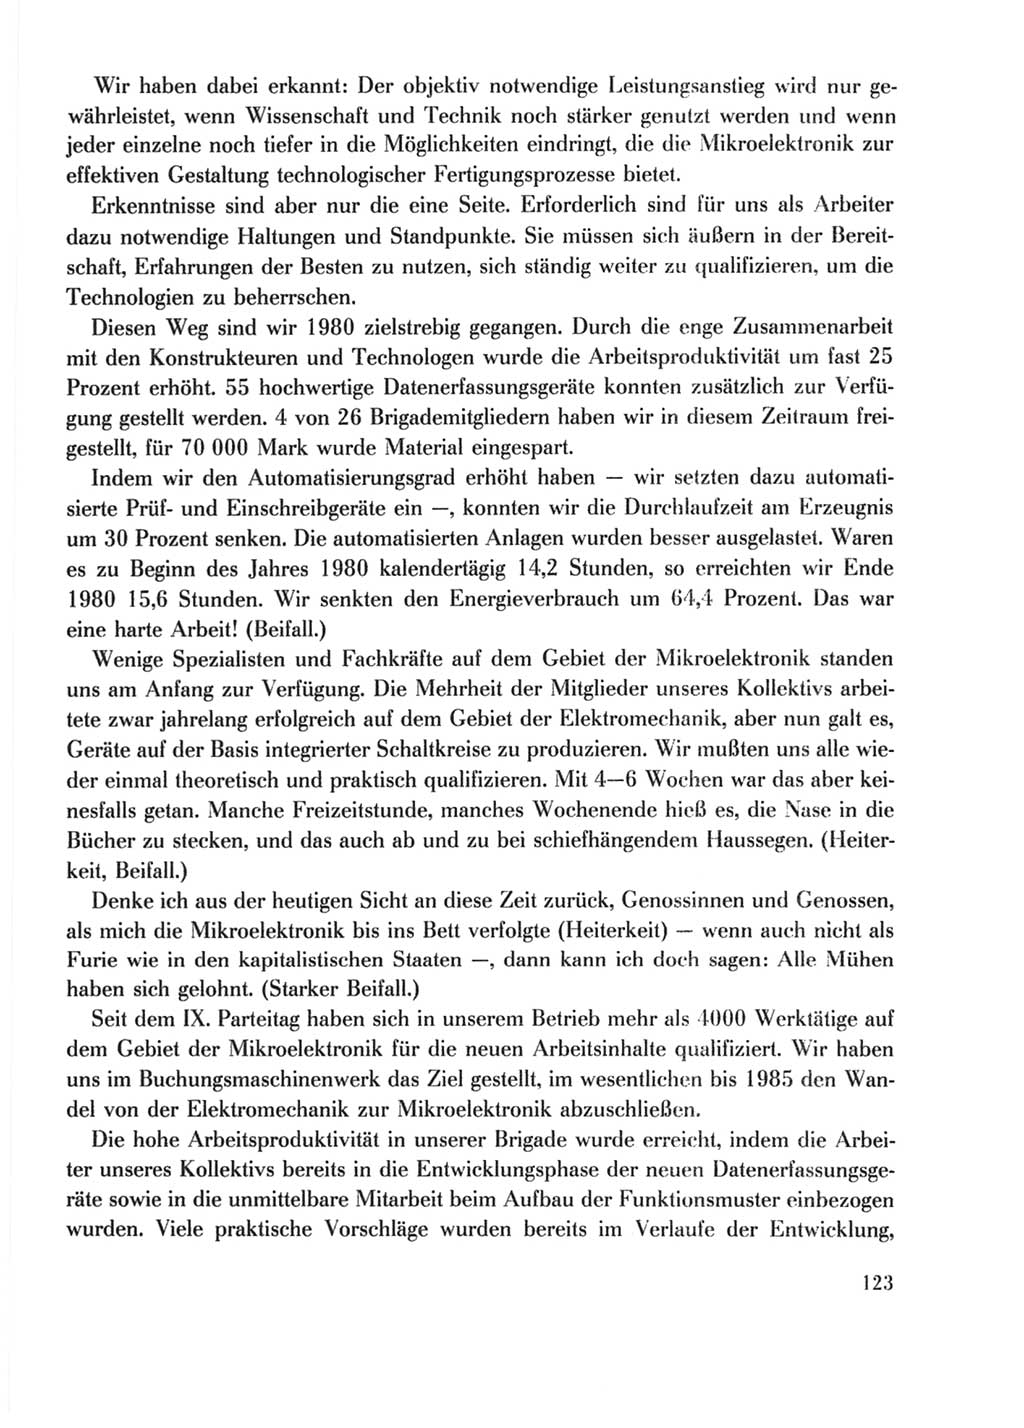 Protokoll der Verhandlungen des Ⅹ. Parteitages der Sozialistischen Einheitspartei Deutschlands (SED) [Deutsche Demokratische Republik (DDR)] 1981, Band 2, Seite 123 (Prot. Verh. Ⅹ. PT SED DDR 1981, Bd. 2, S. 123)